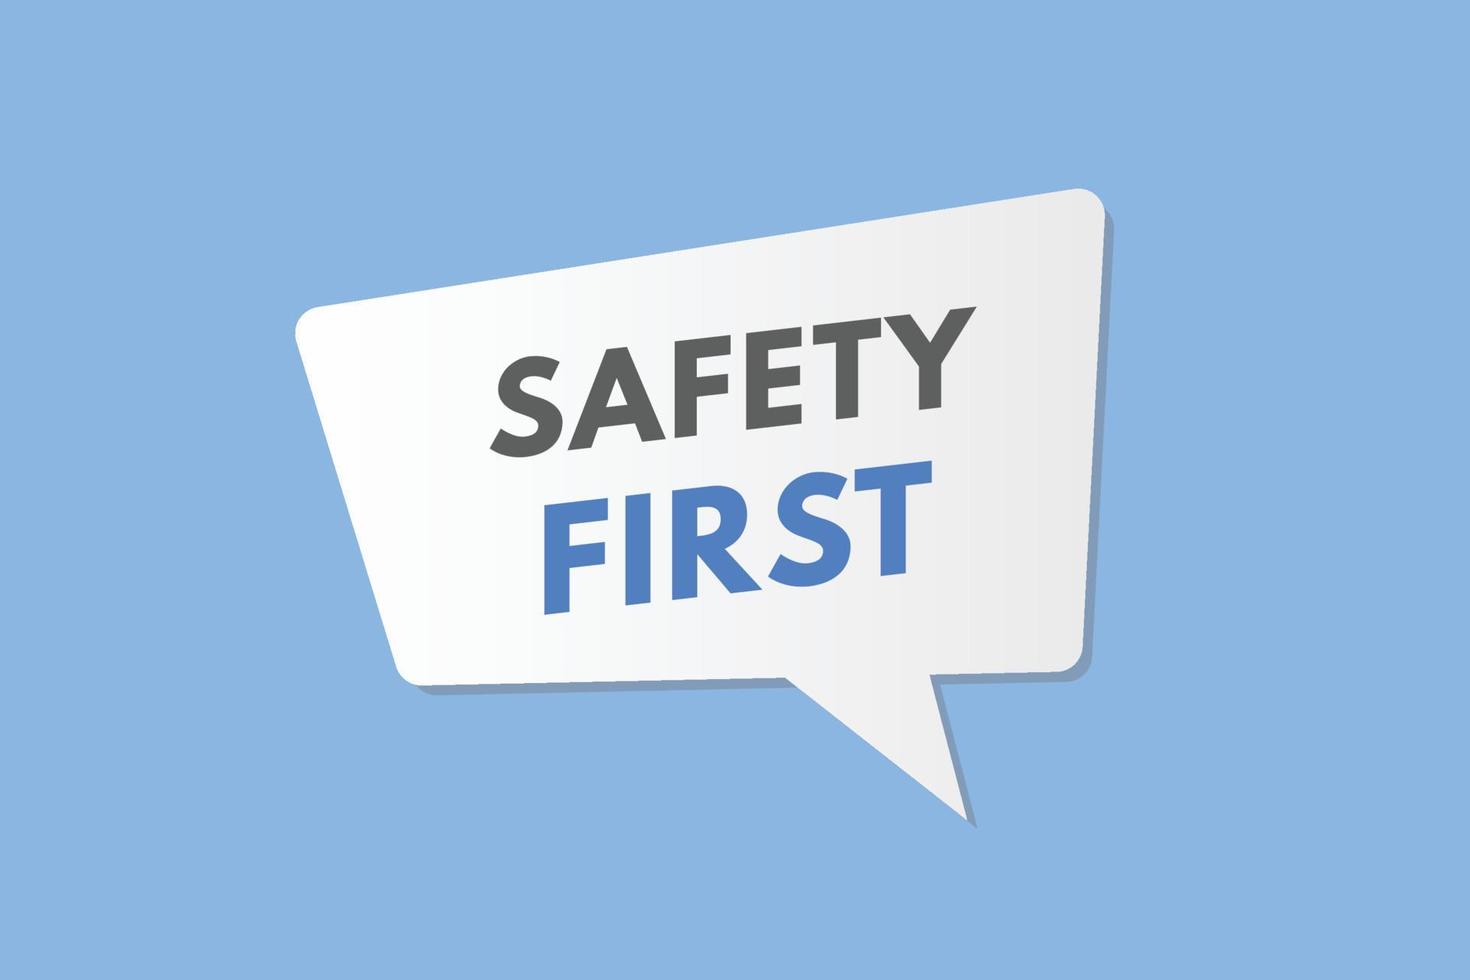 veiligheid eerste tekst knop. veiligheid eerste teken icoon etiket sticker web toetsen vector